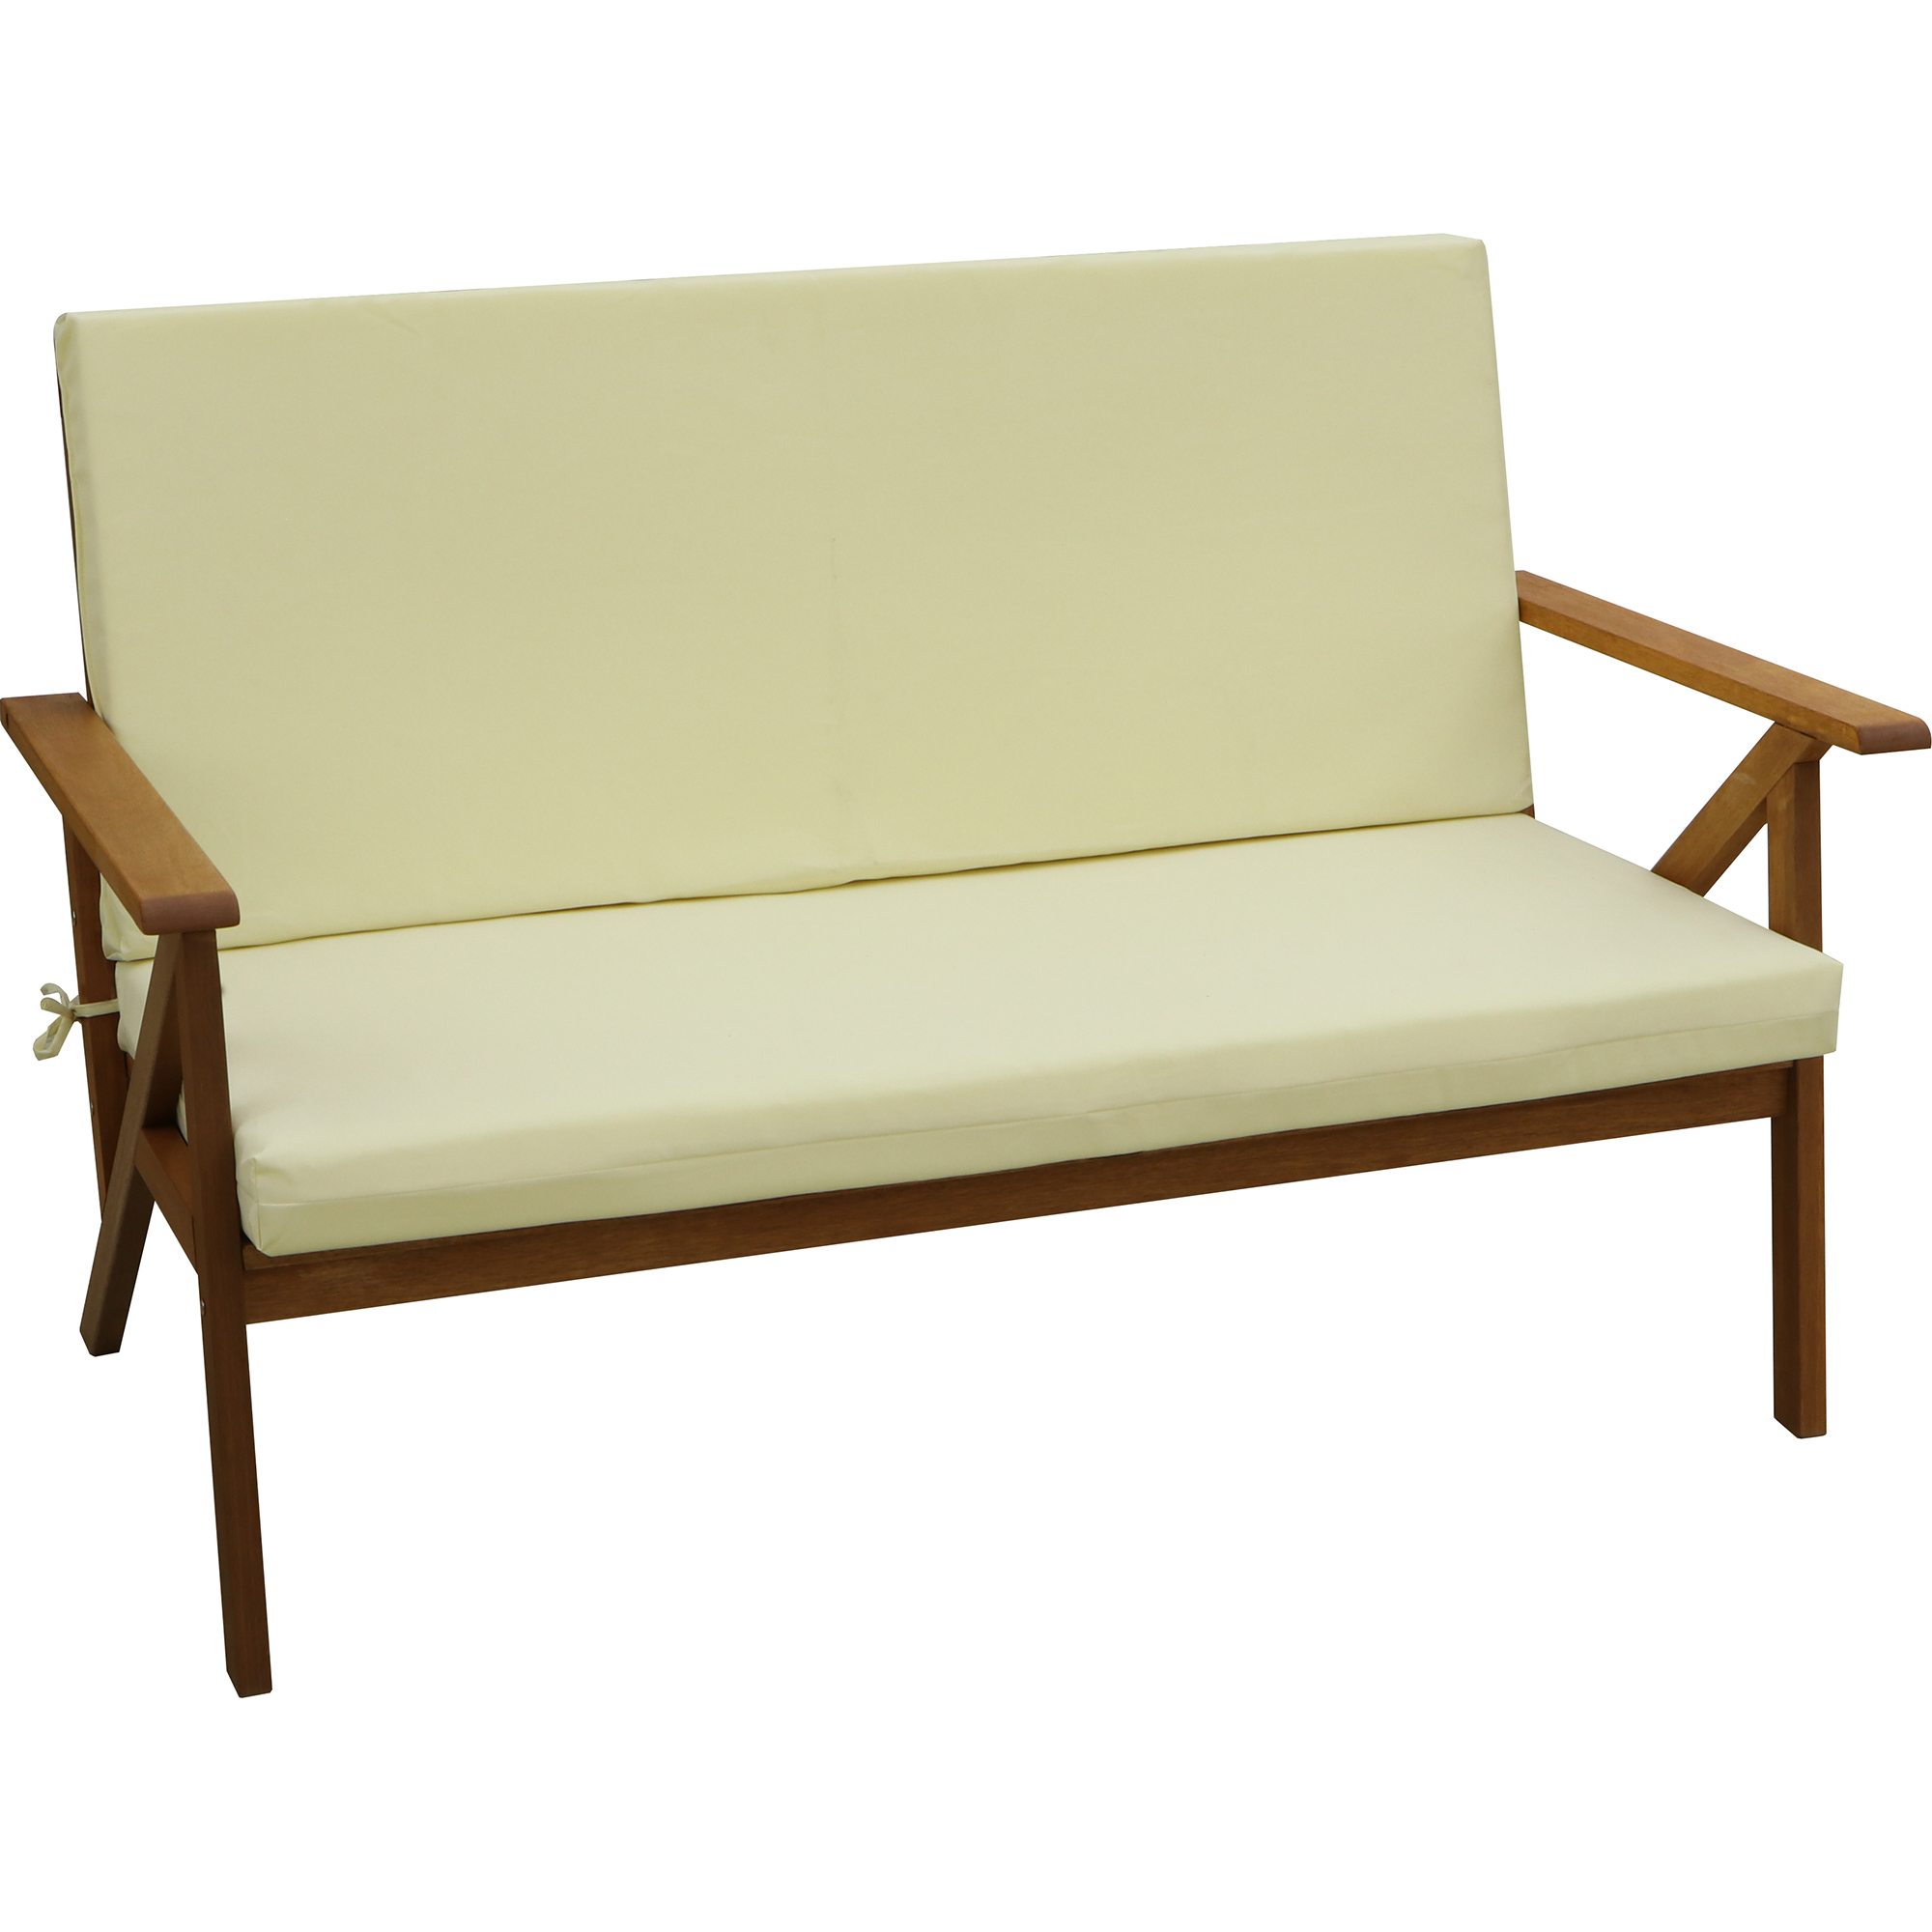 Комплект мебели Opal reliance sofa 4 предмета - фото 2